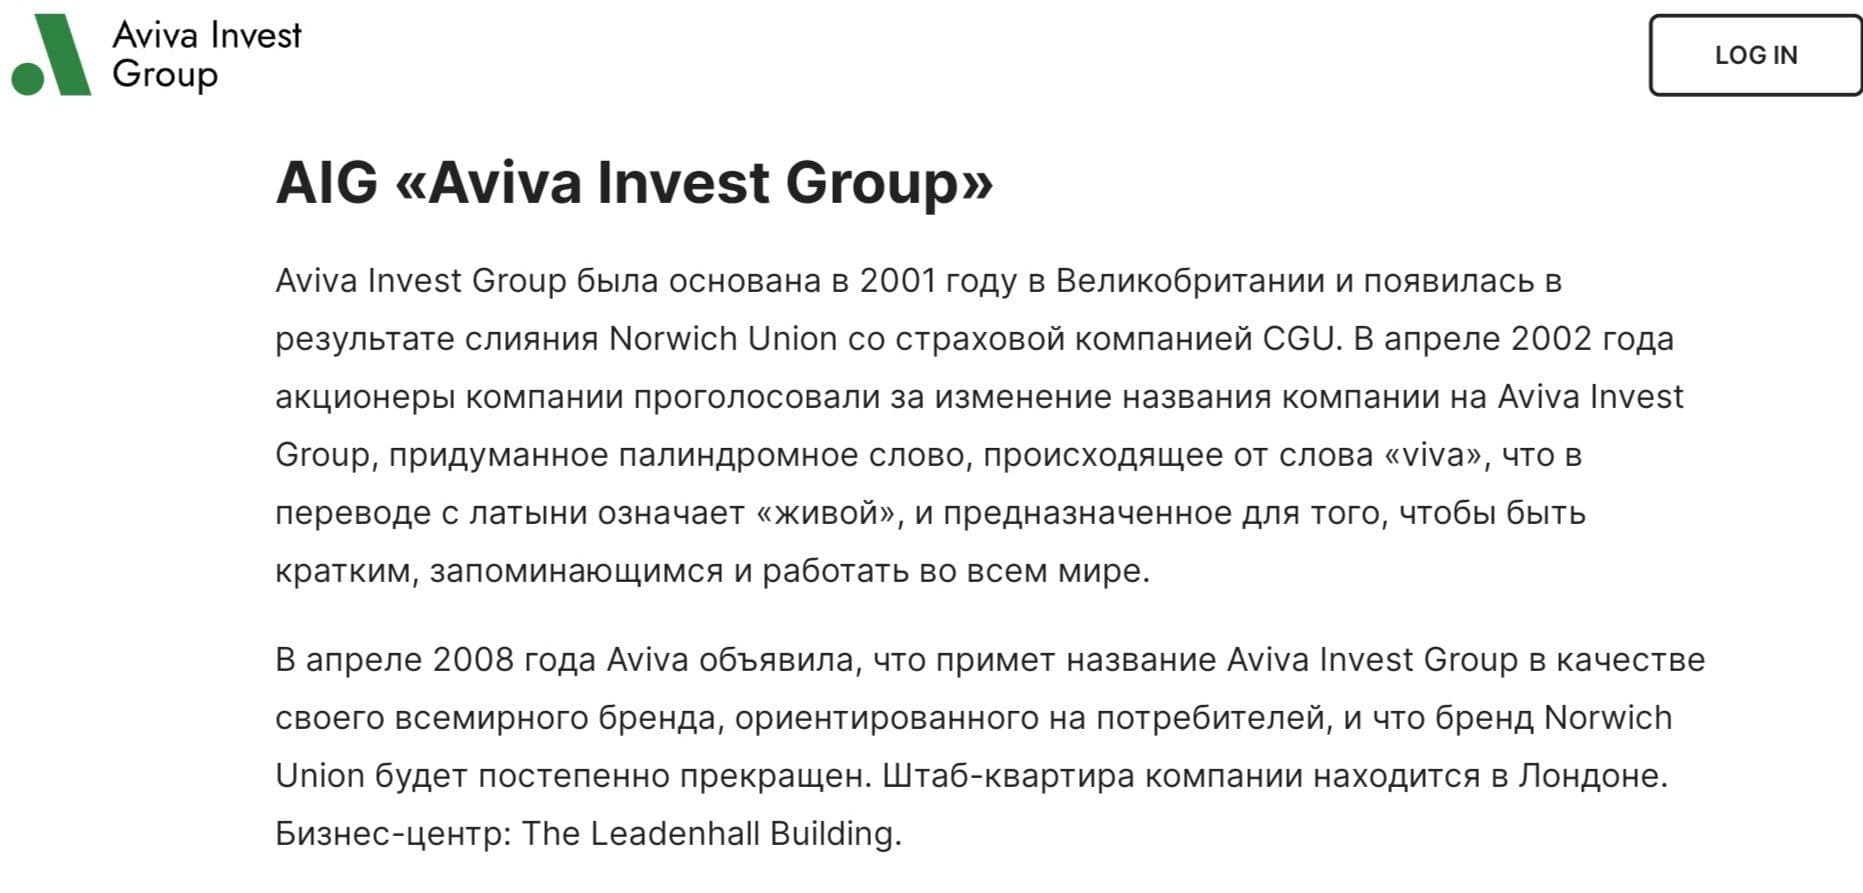 Aviva Invest Group компания обзор